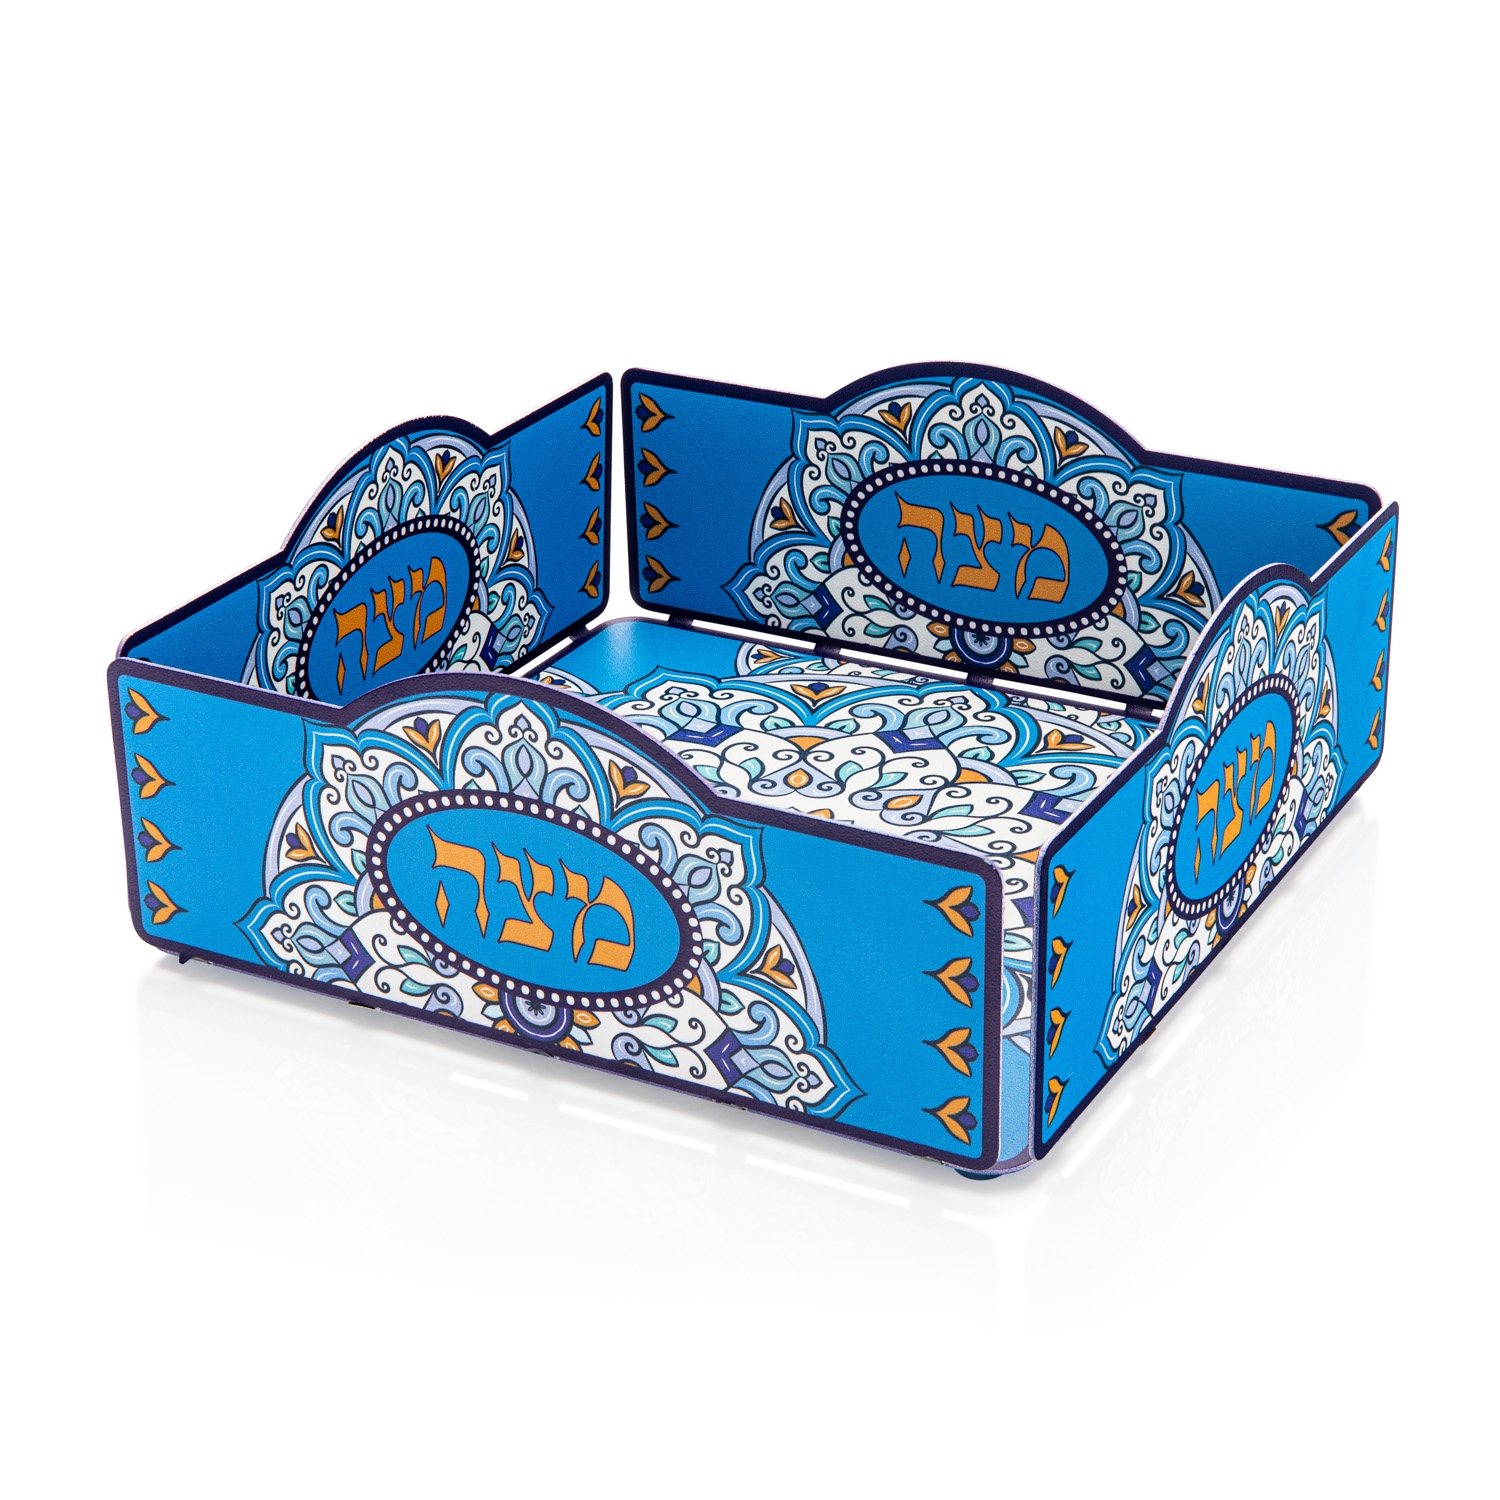 Matzah Tray with Blue and Orange Flower Design By Dorit Judaica - 1